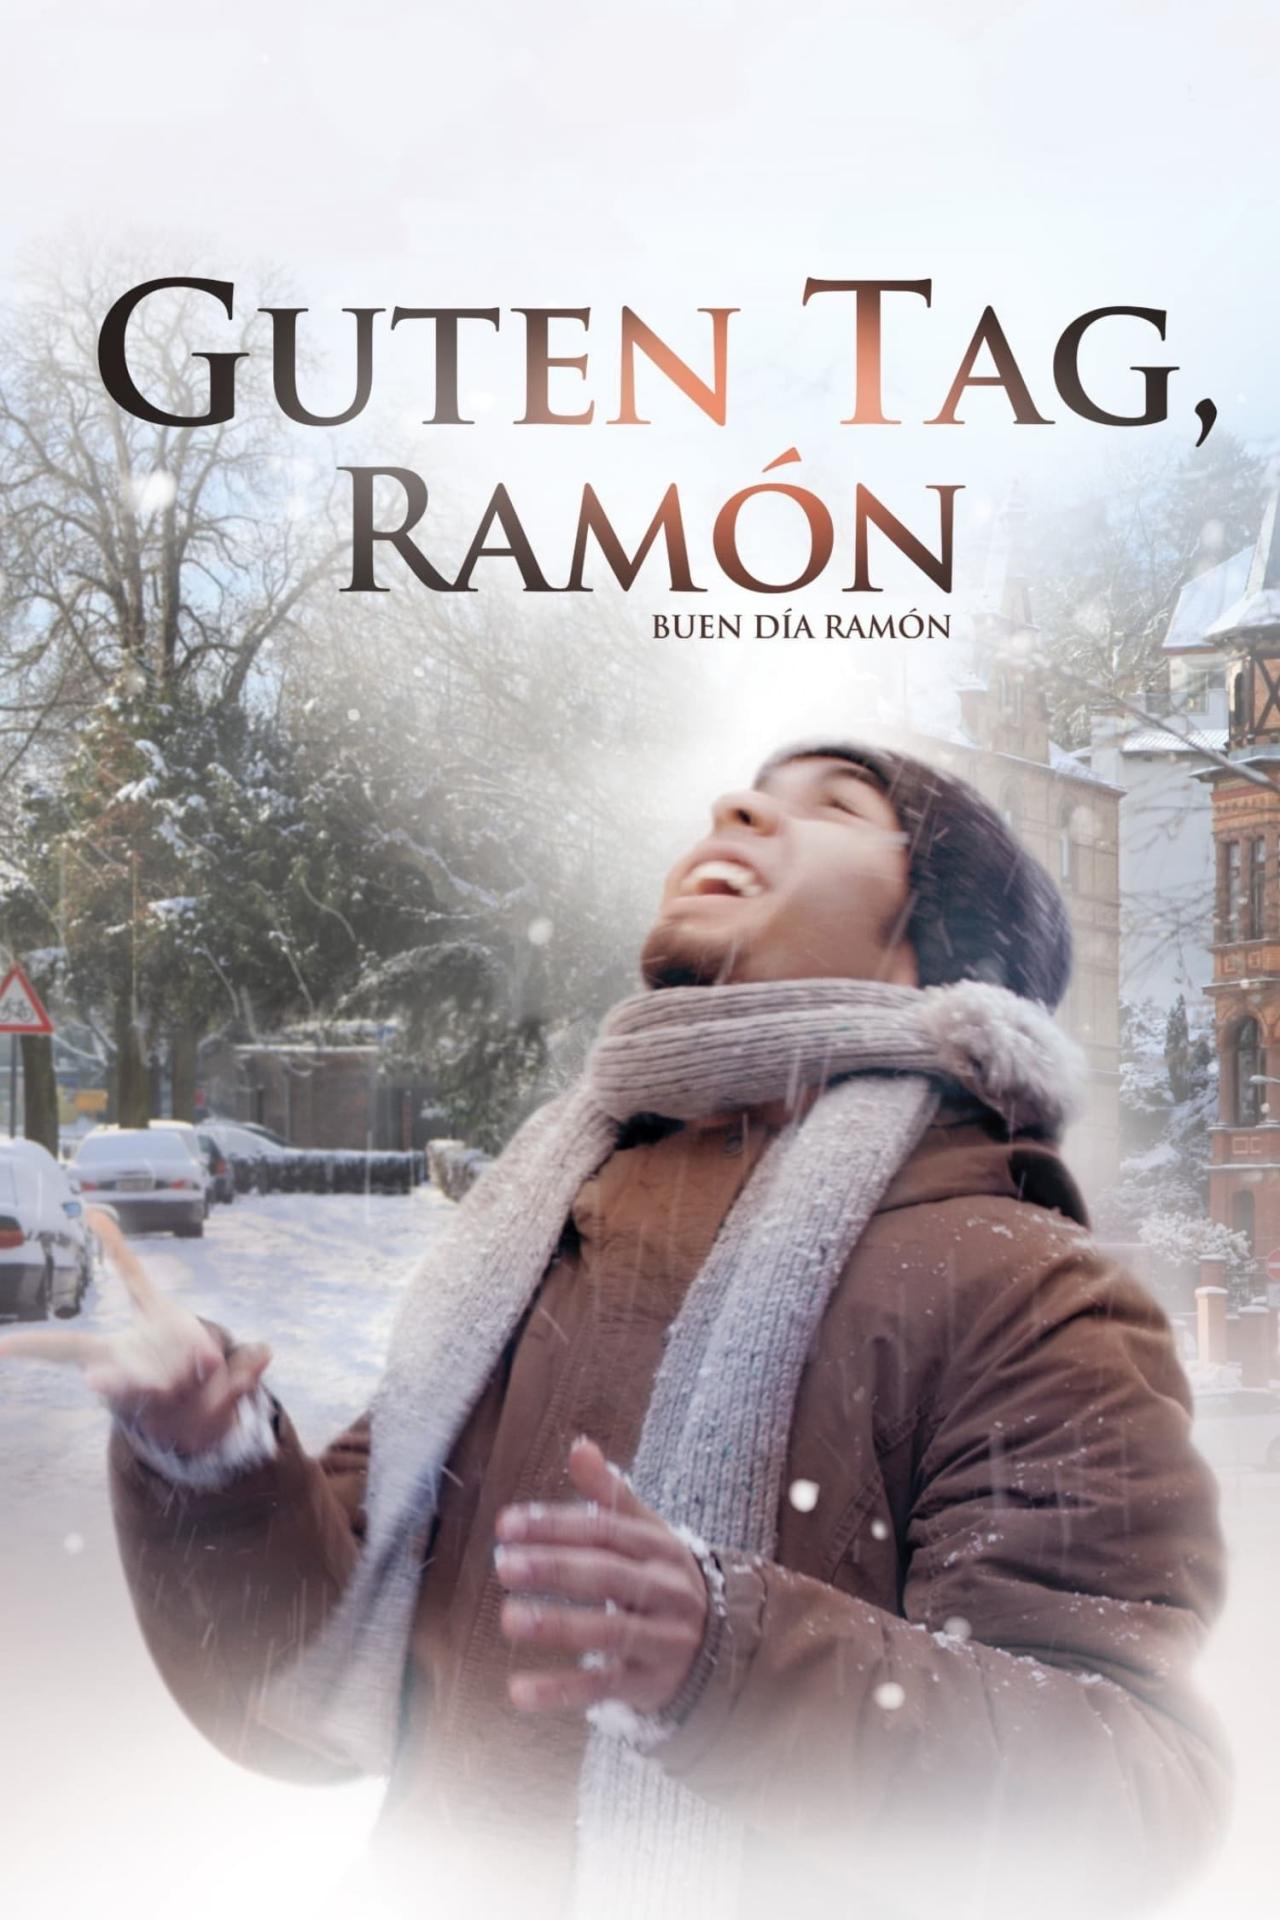 Guten Tag, Ramón est-il disponible sur Netflix ou autre ?